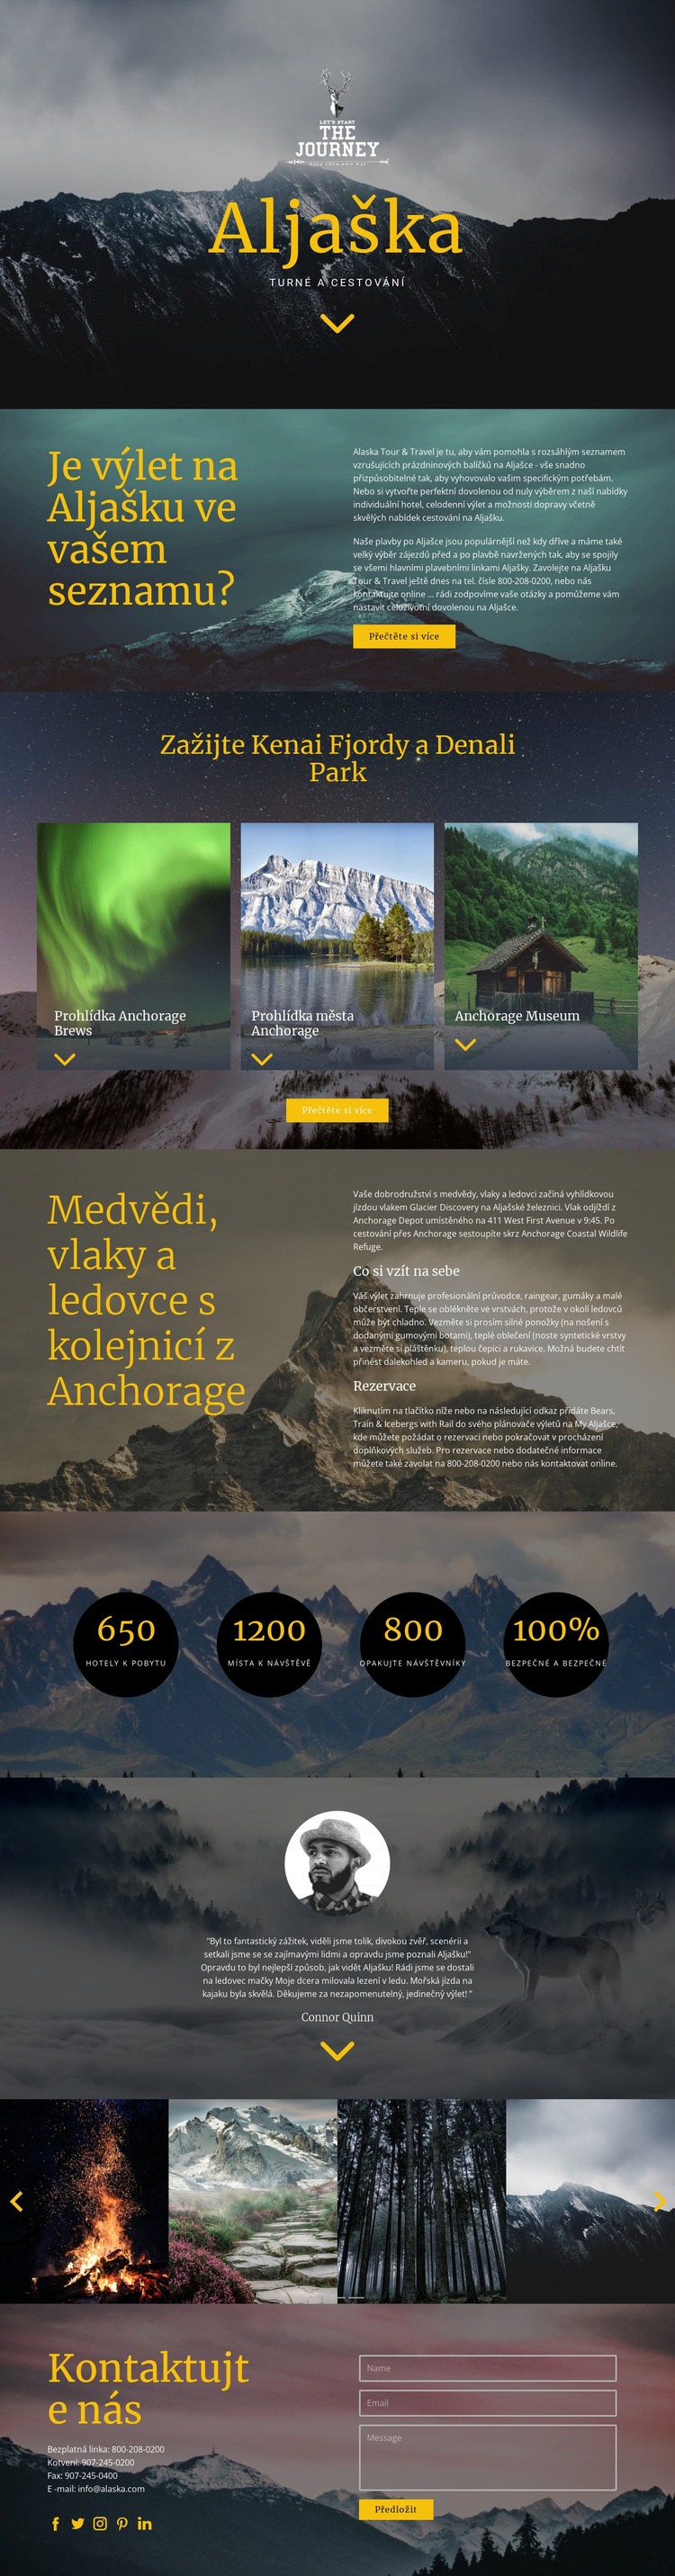 Aljaška Travel Téma WordPress